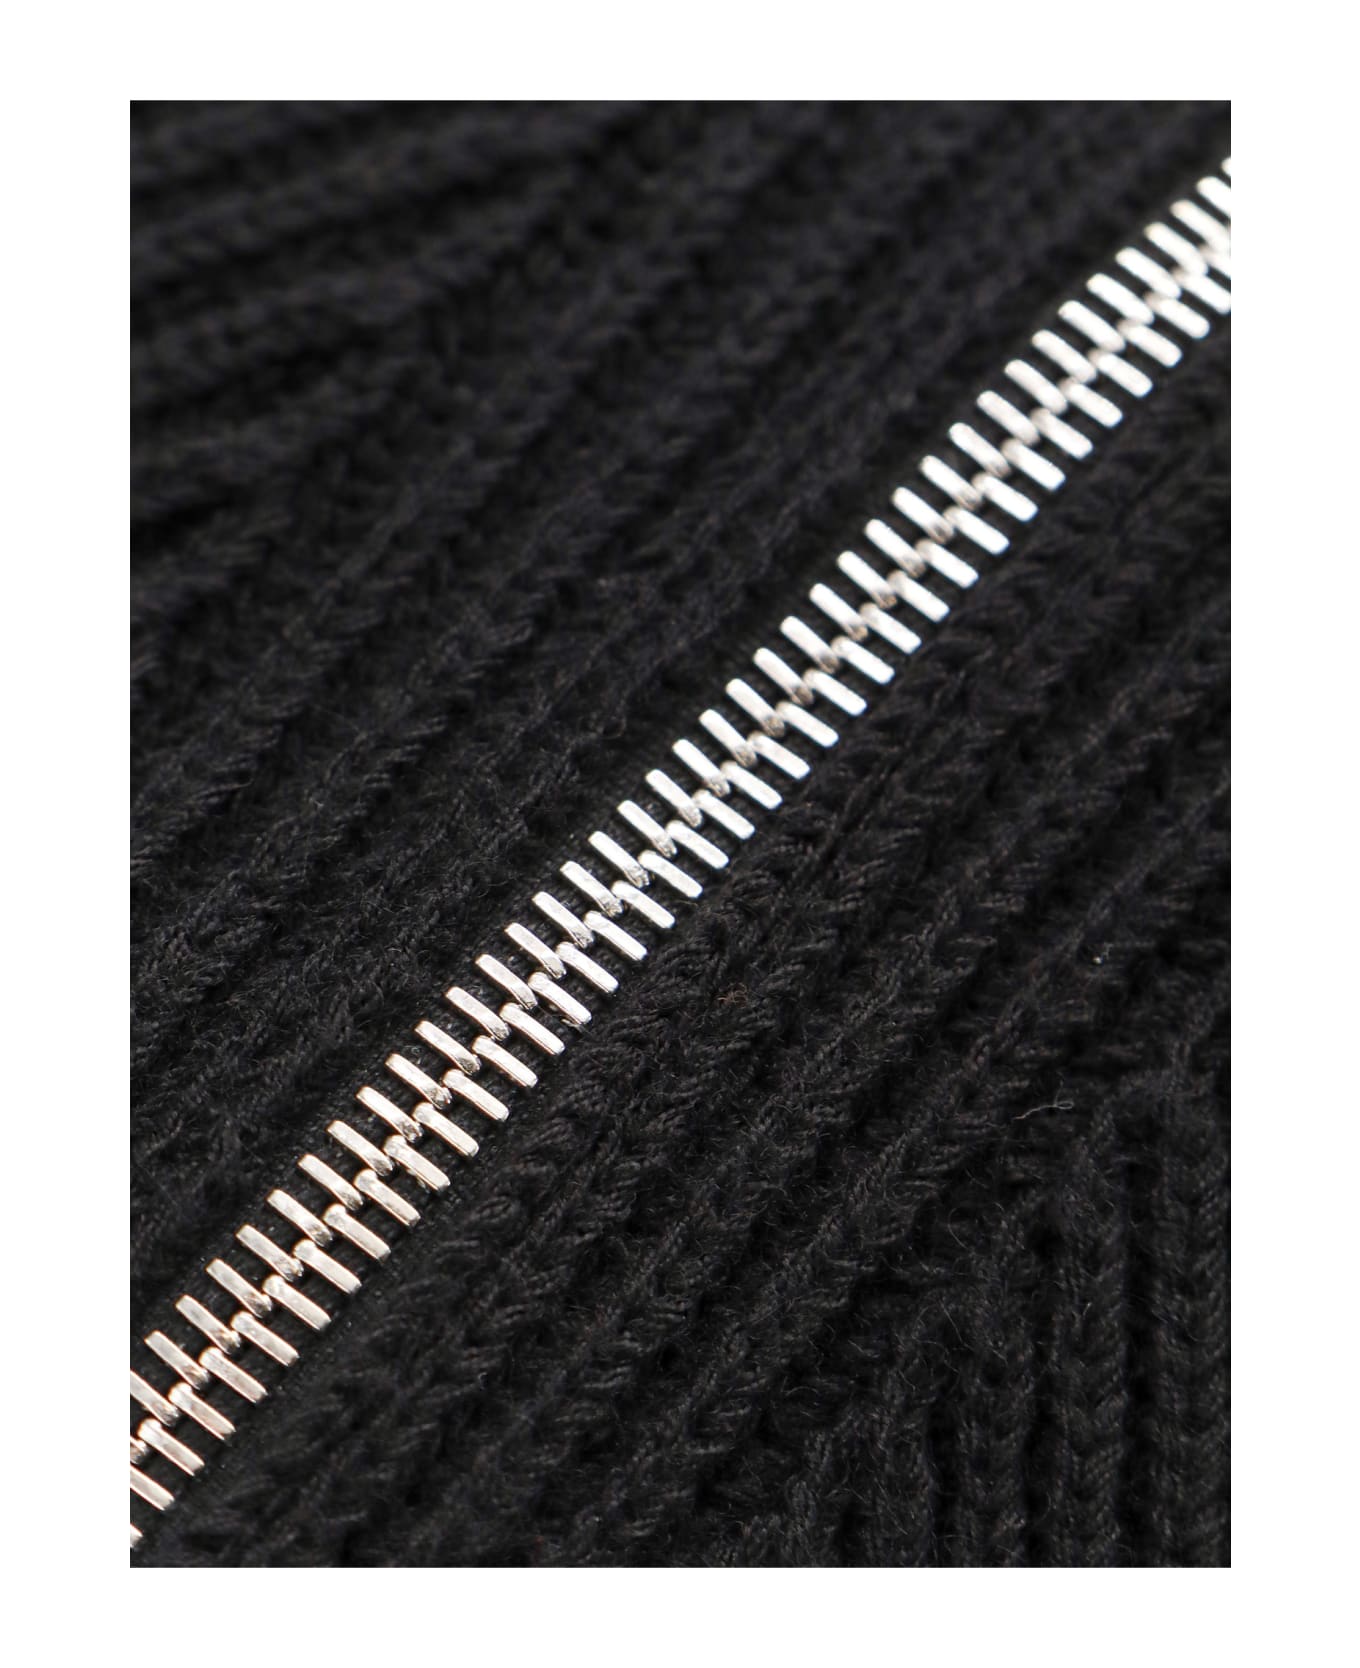 Burberry Sweater - Black ニットウェア